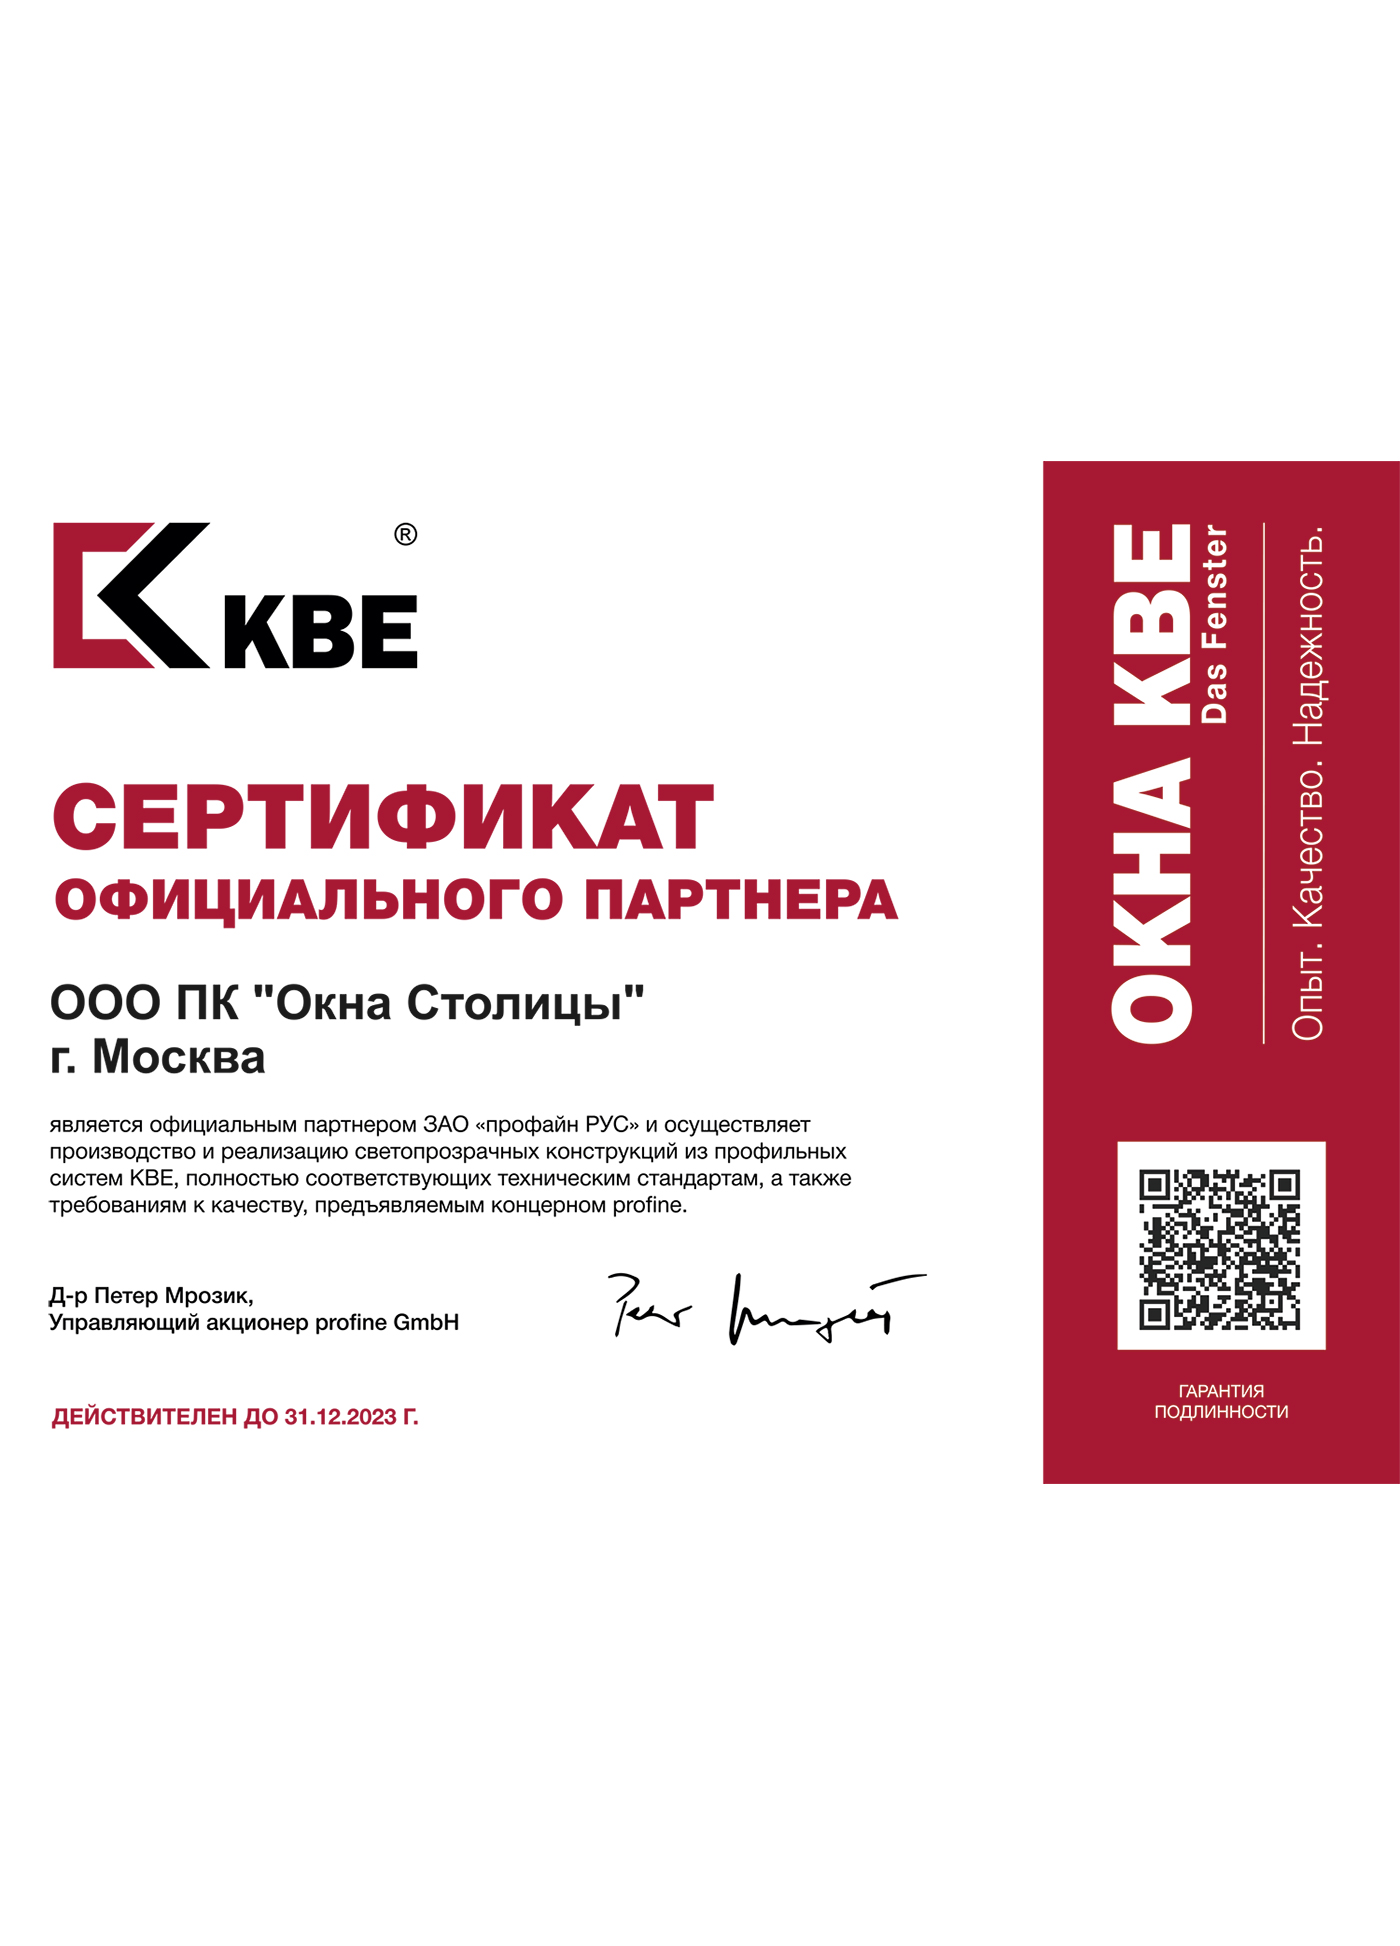 Профайн РУС (KBE), сертификат официального партнера, 31.12.2023